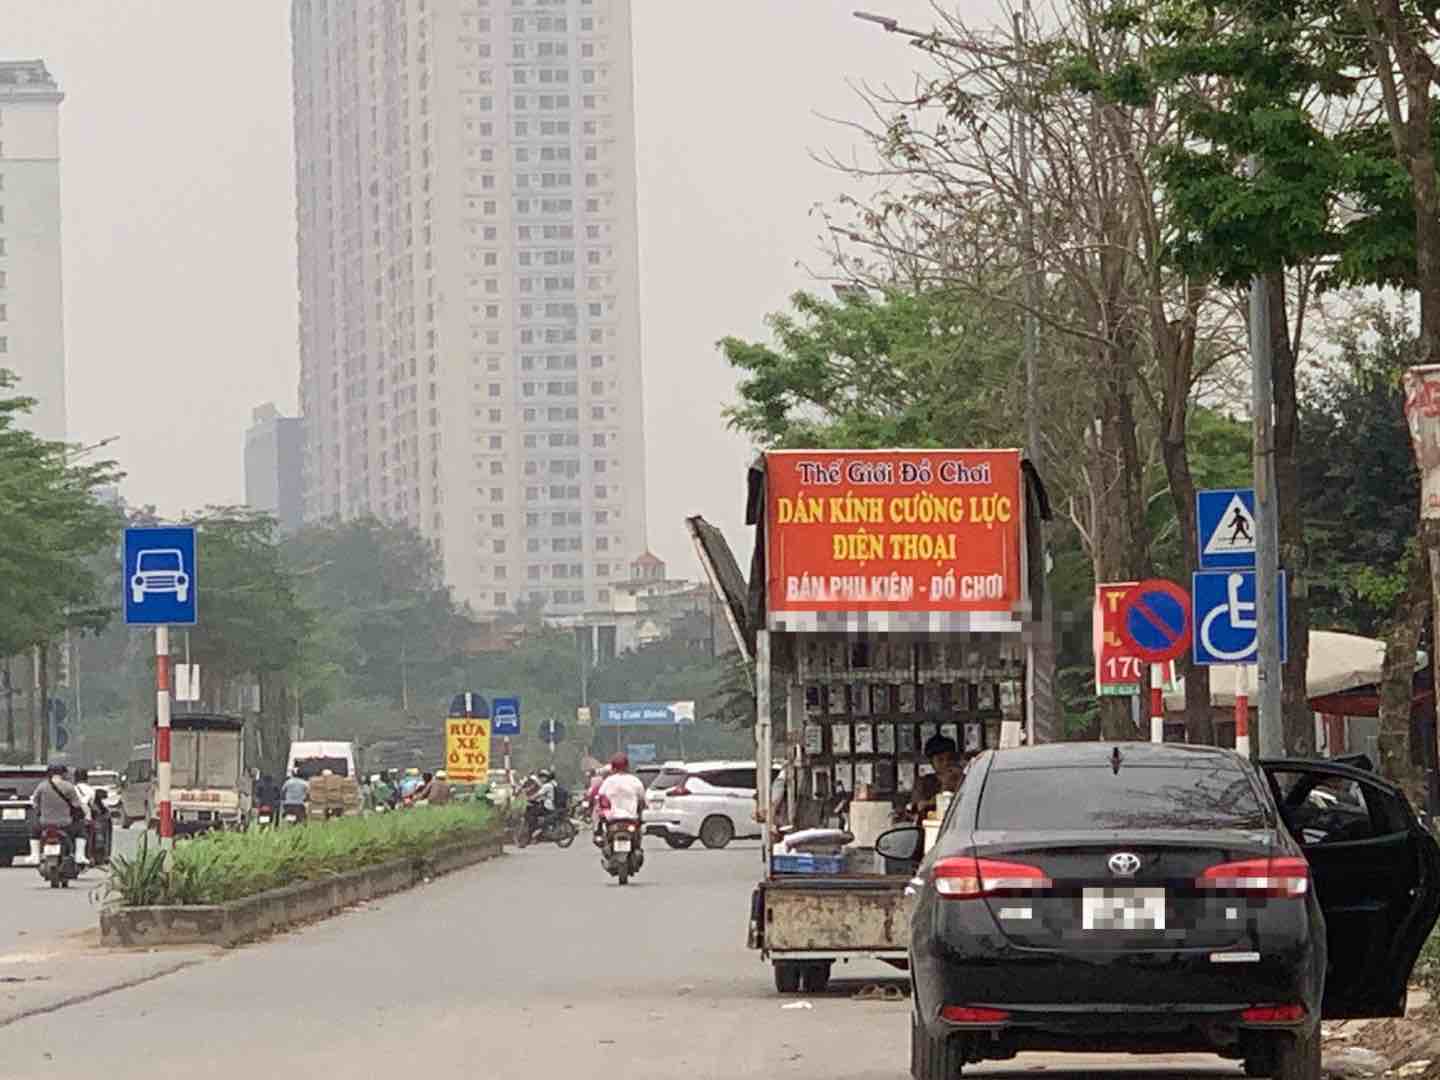 Xe bán phụ kiện điện thoại chiếm dụng lòng đường trái phép tại Đại lộ Chu Văn An (Hà Nội). Ảnh: Nhật Minh